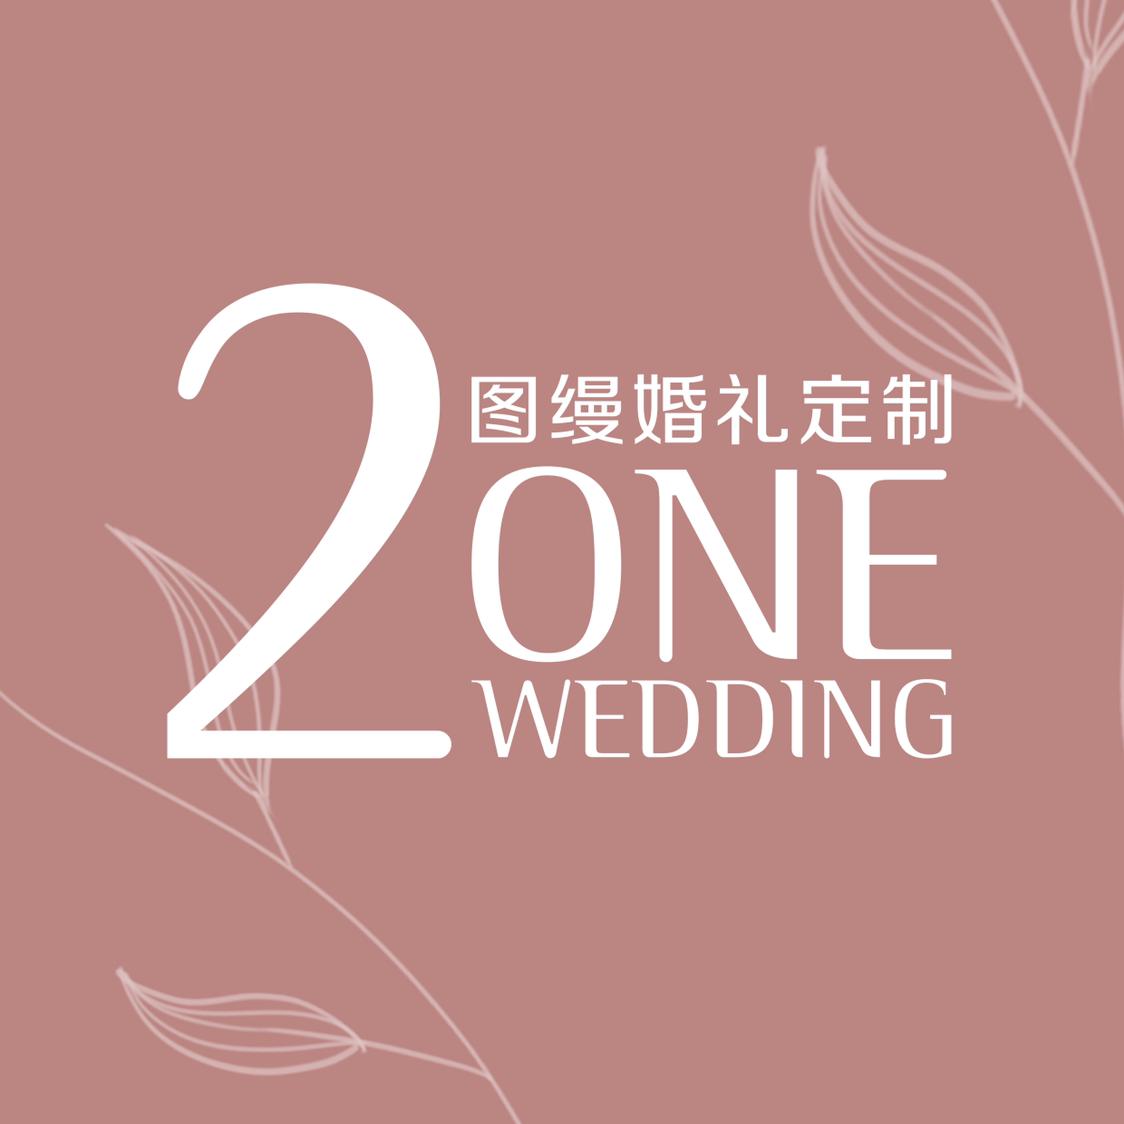 图缦婚礼2onewedding